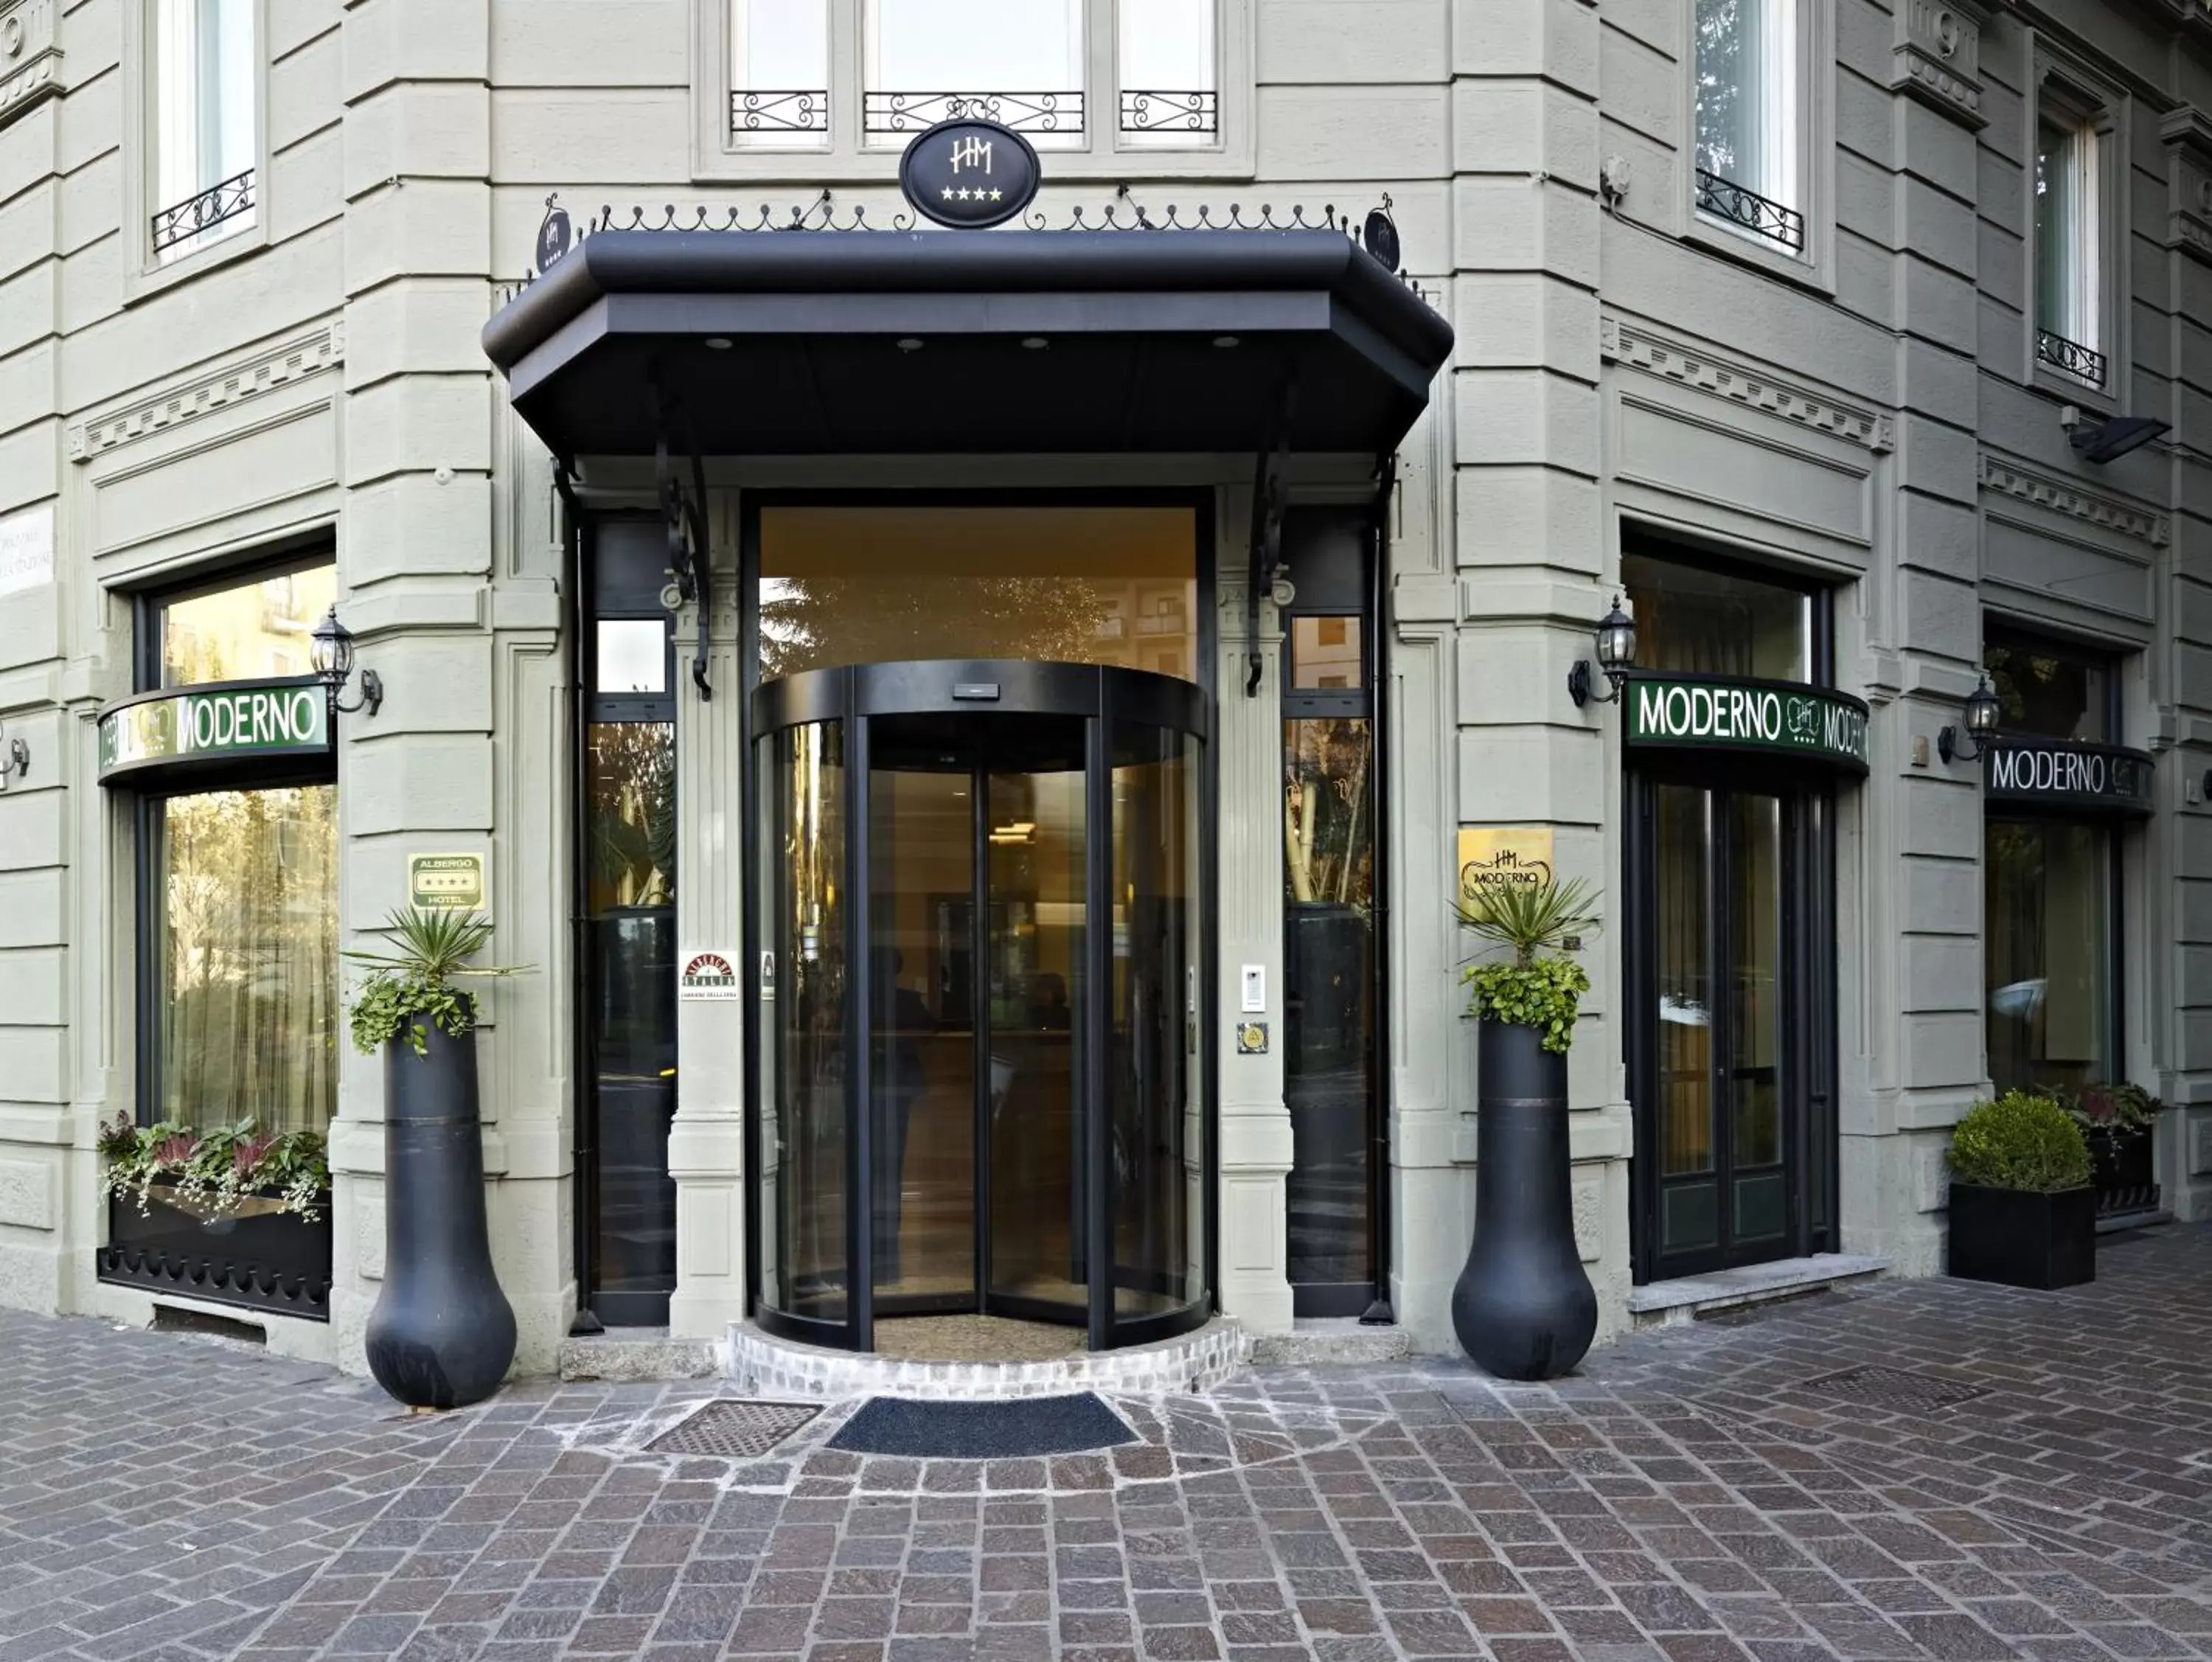 Facade/entrance in Hotel Moderno